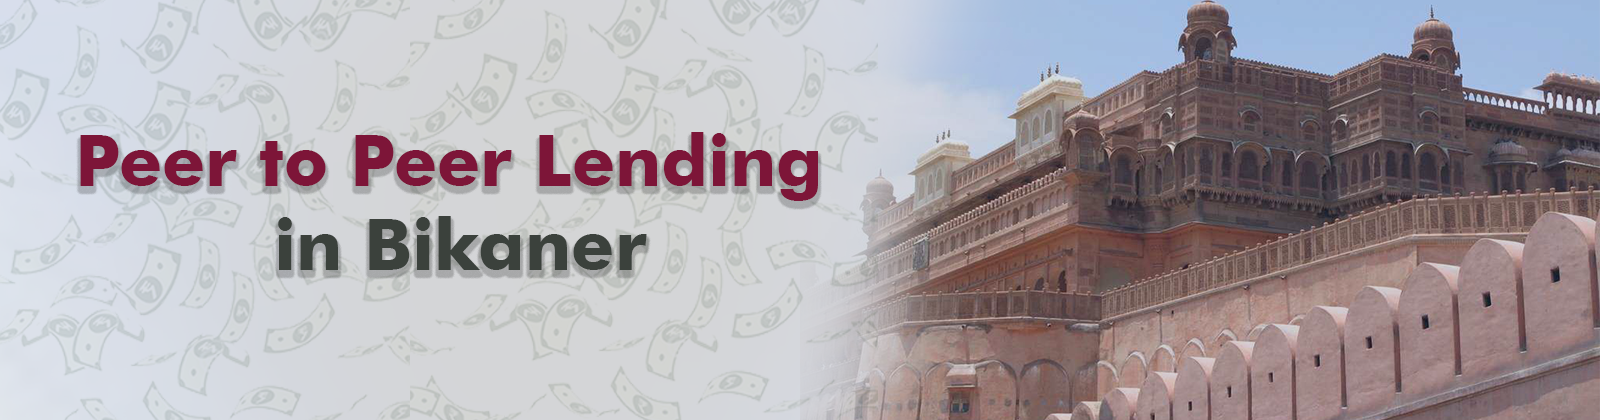 Peer to Peer Lending in Bikaner